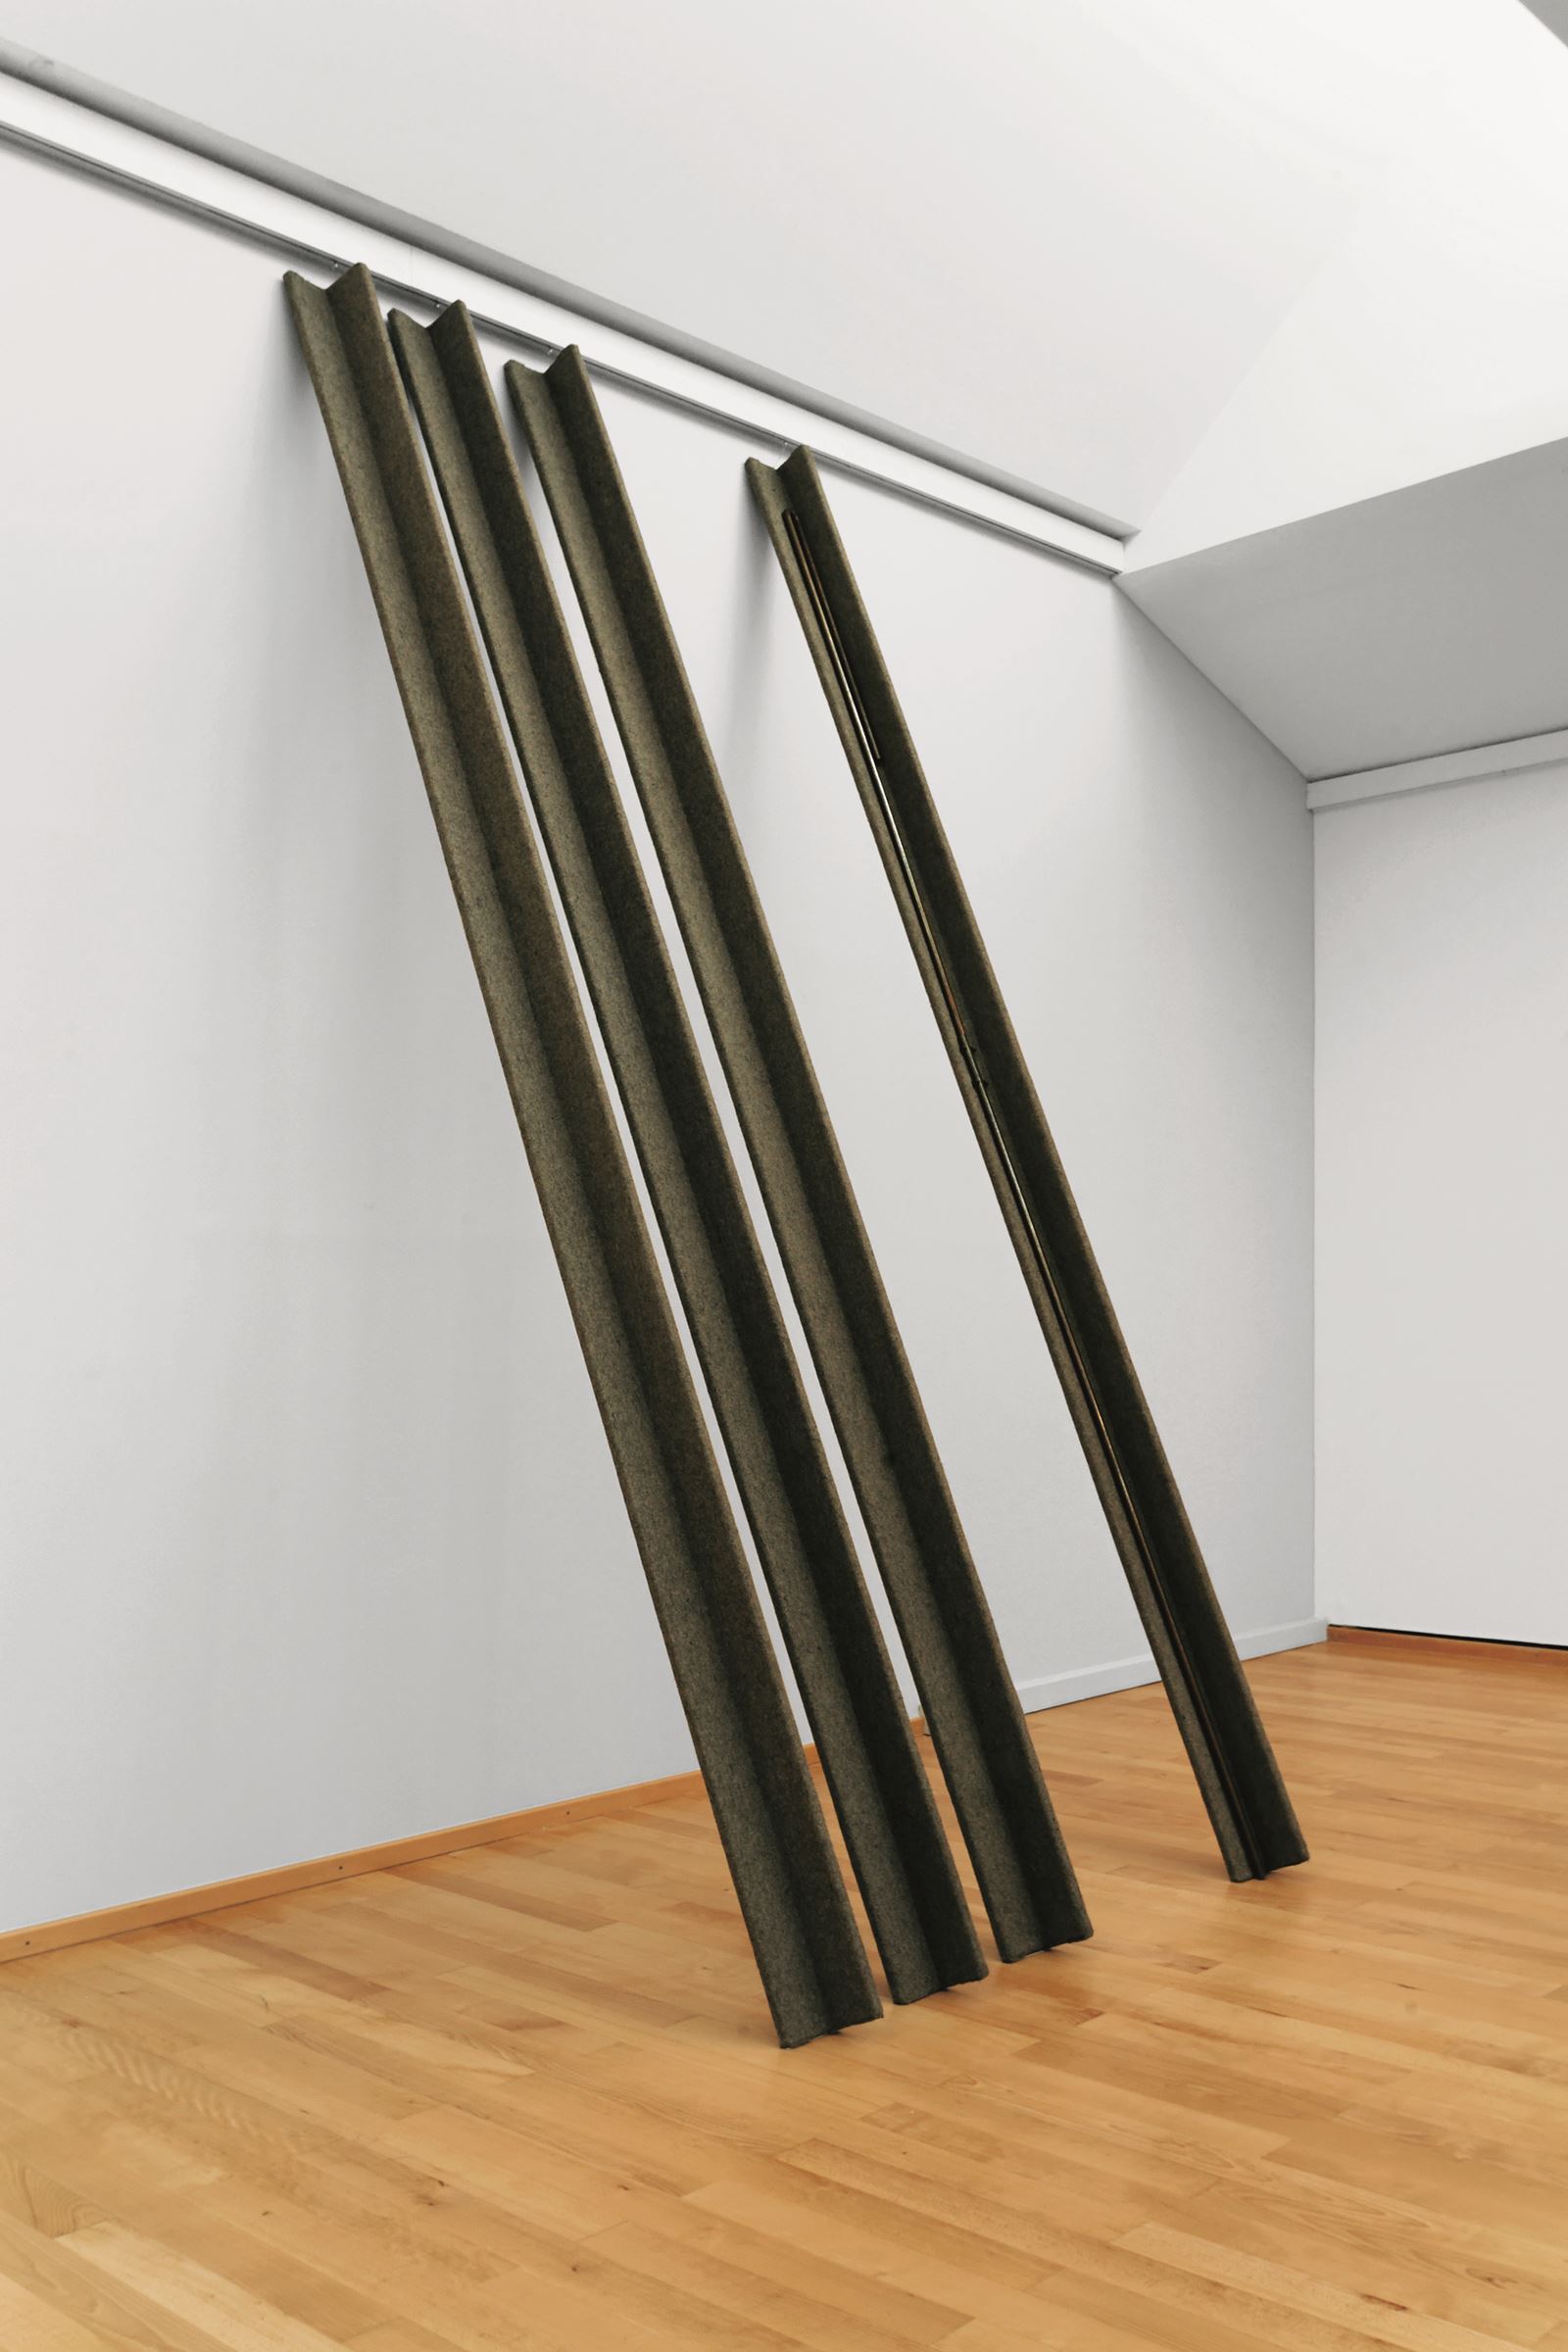 ヨーゼフ・ボイス《ユーラシアの杖》1968/69 クンストパラスト美術館、デュッセルドルフ (C)Kunstpalast - Manos Meisen – ARTOTHEK　VG Bild-Kunst, Bonn & JASPAR, Tokyo, 2021 E4244